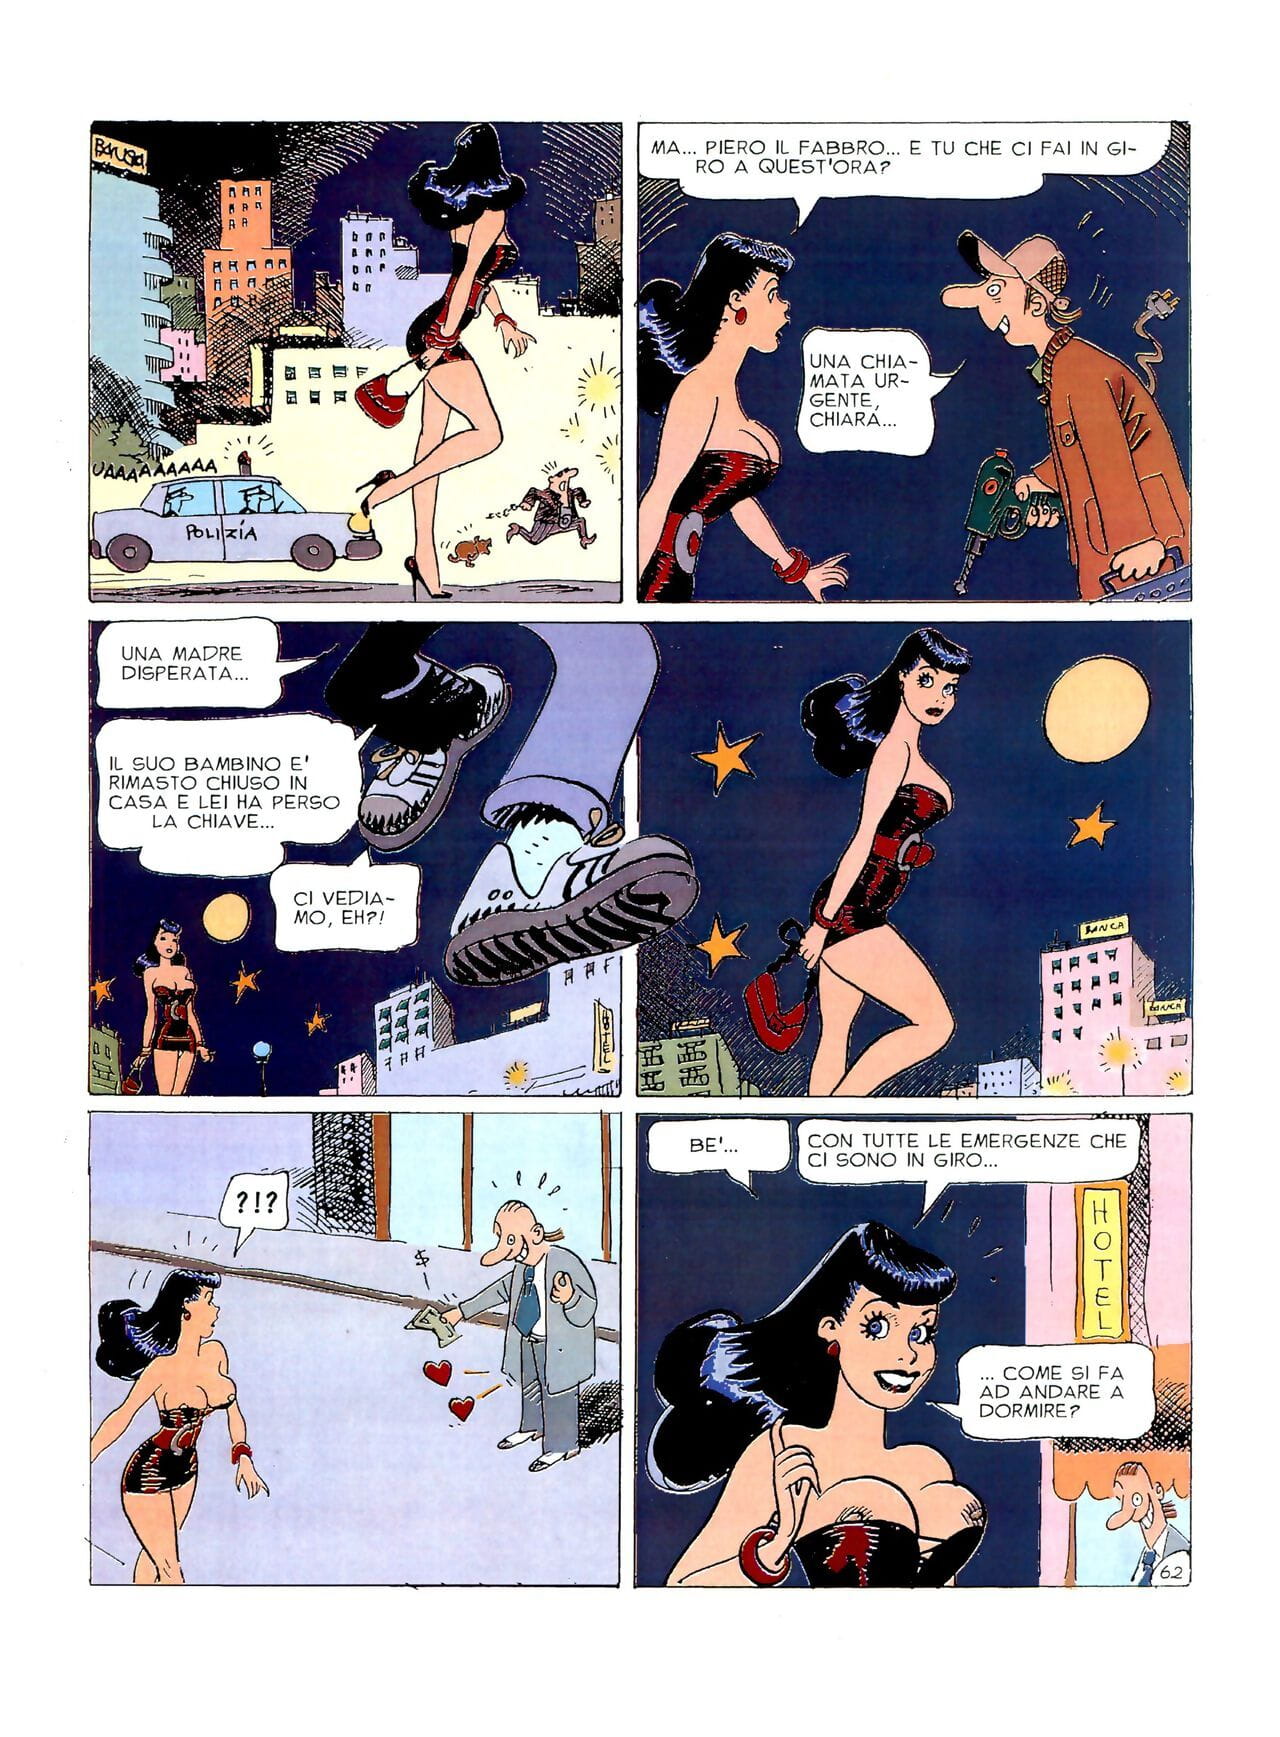 chiara Di notte #1 Onderdeel 3 page 1